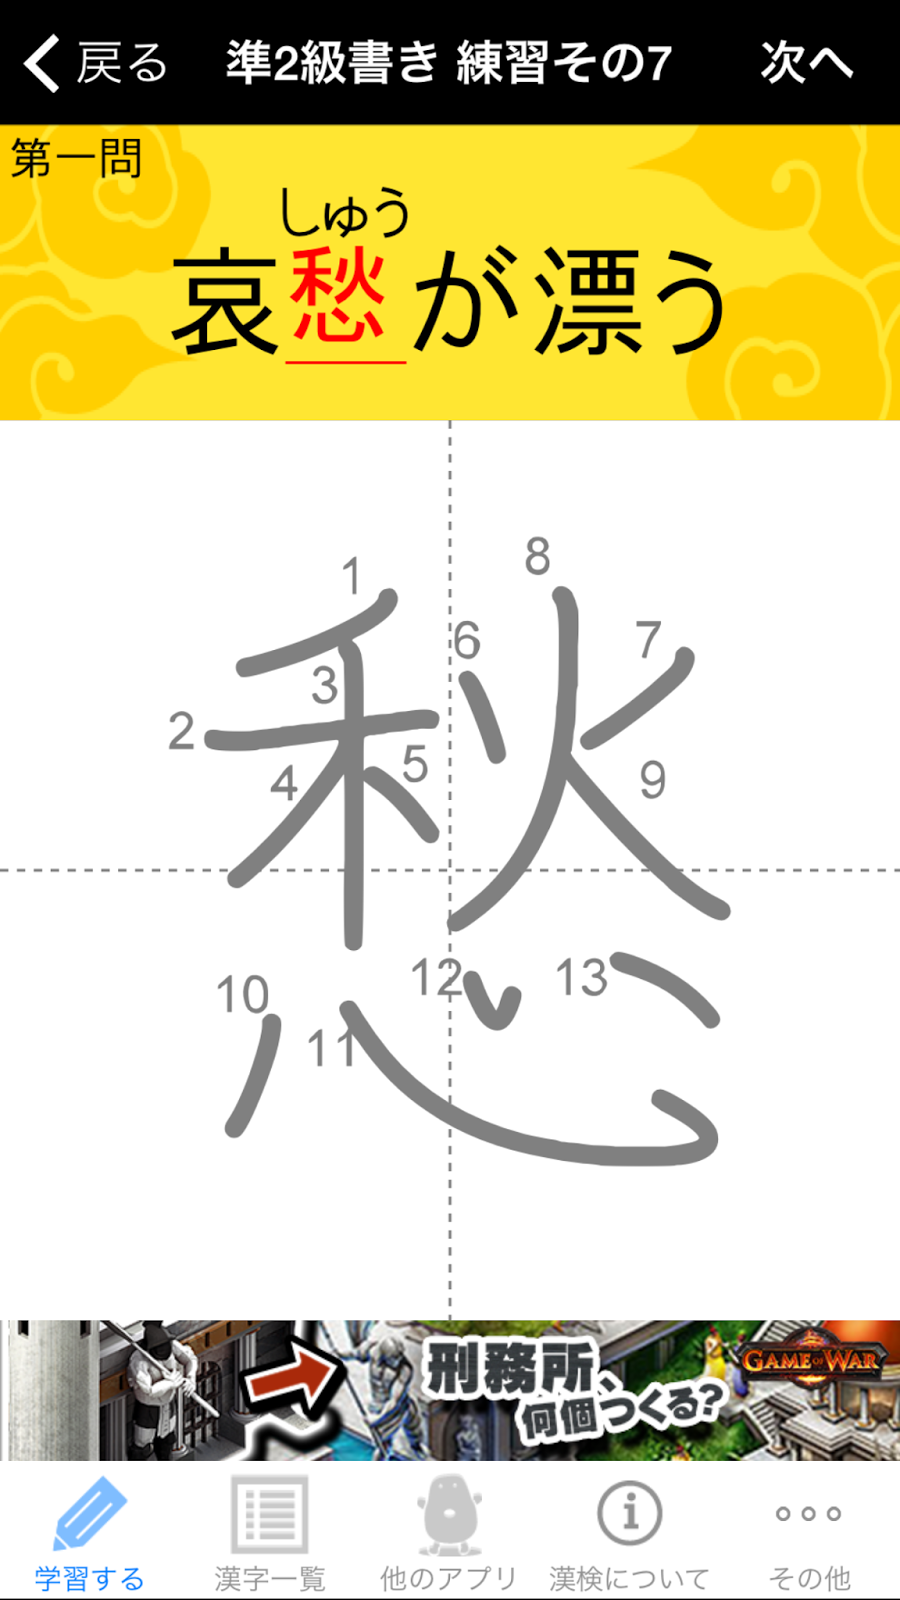 レビュー 漢字検定のトレーニングにも普通に漢字の勉強にもなる 漢字検定 漢検漢字トレーニング Applidata